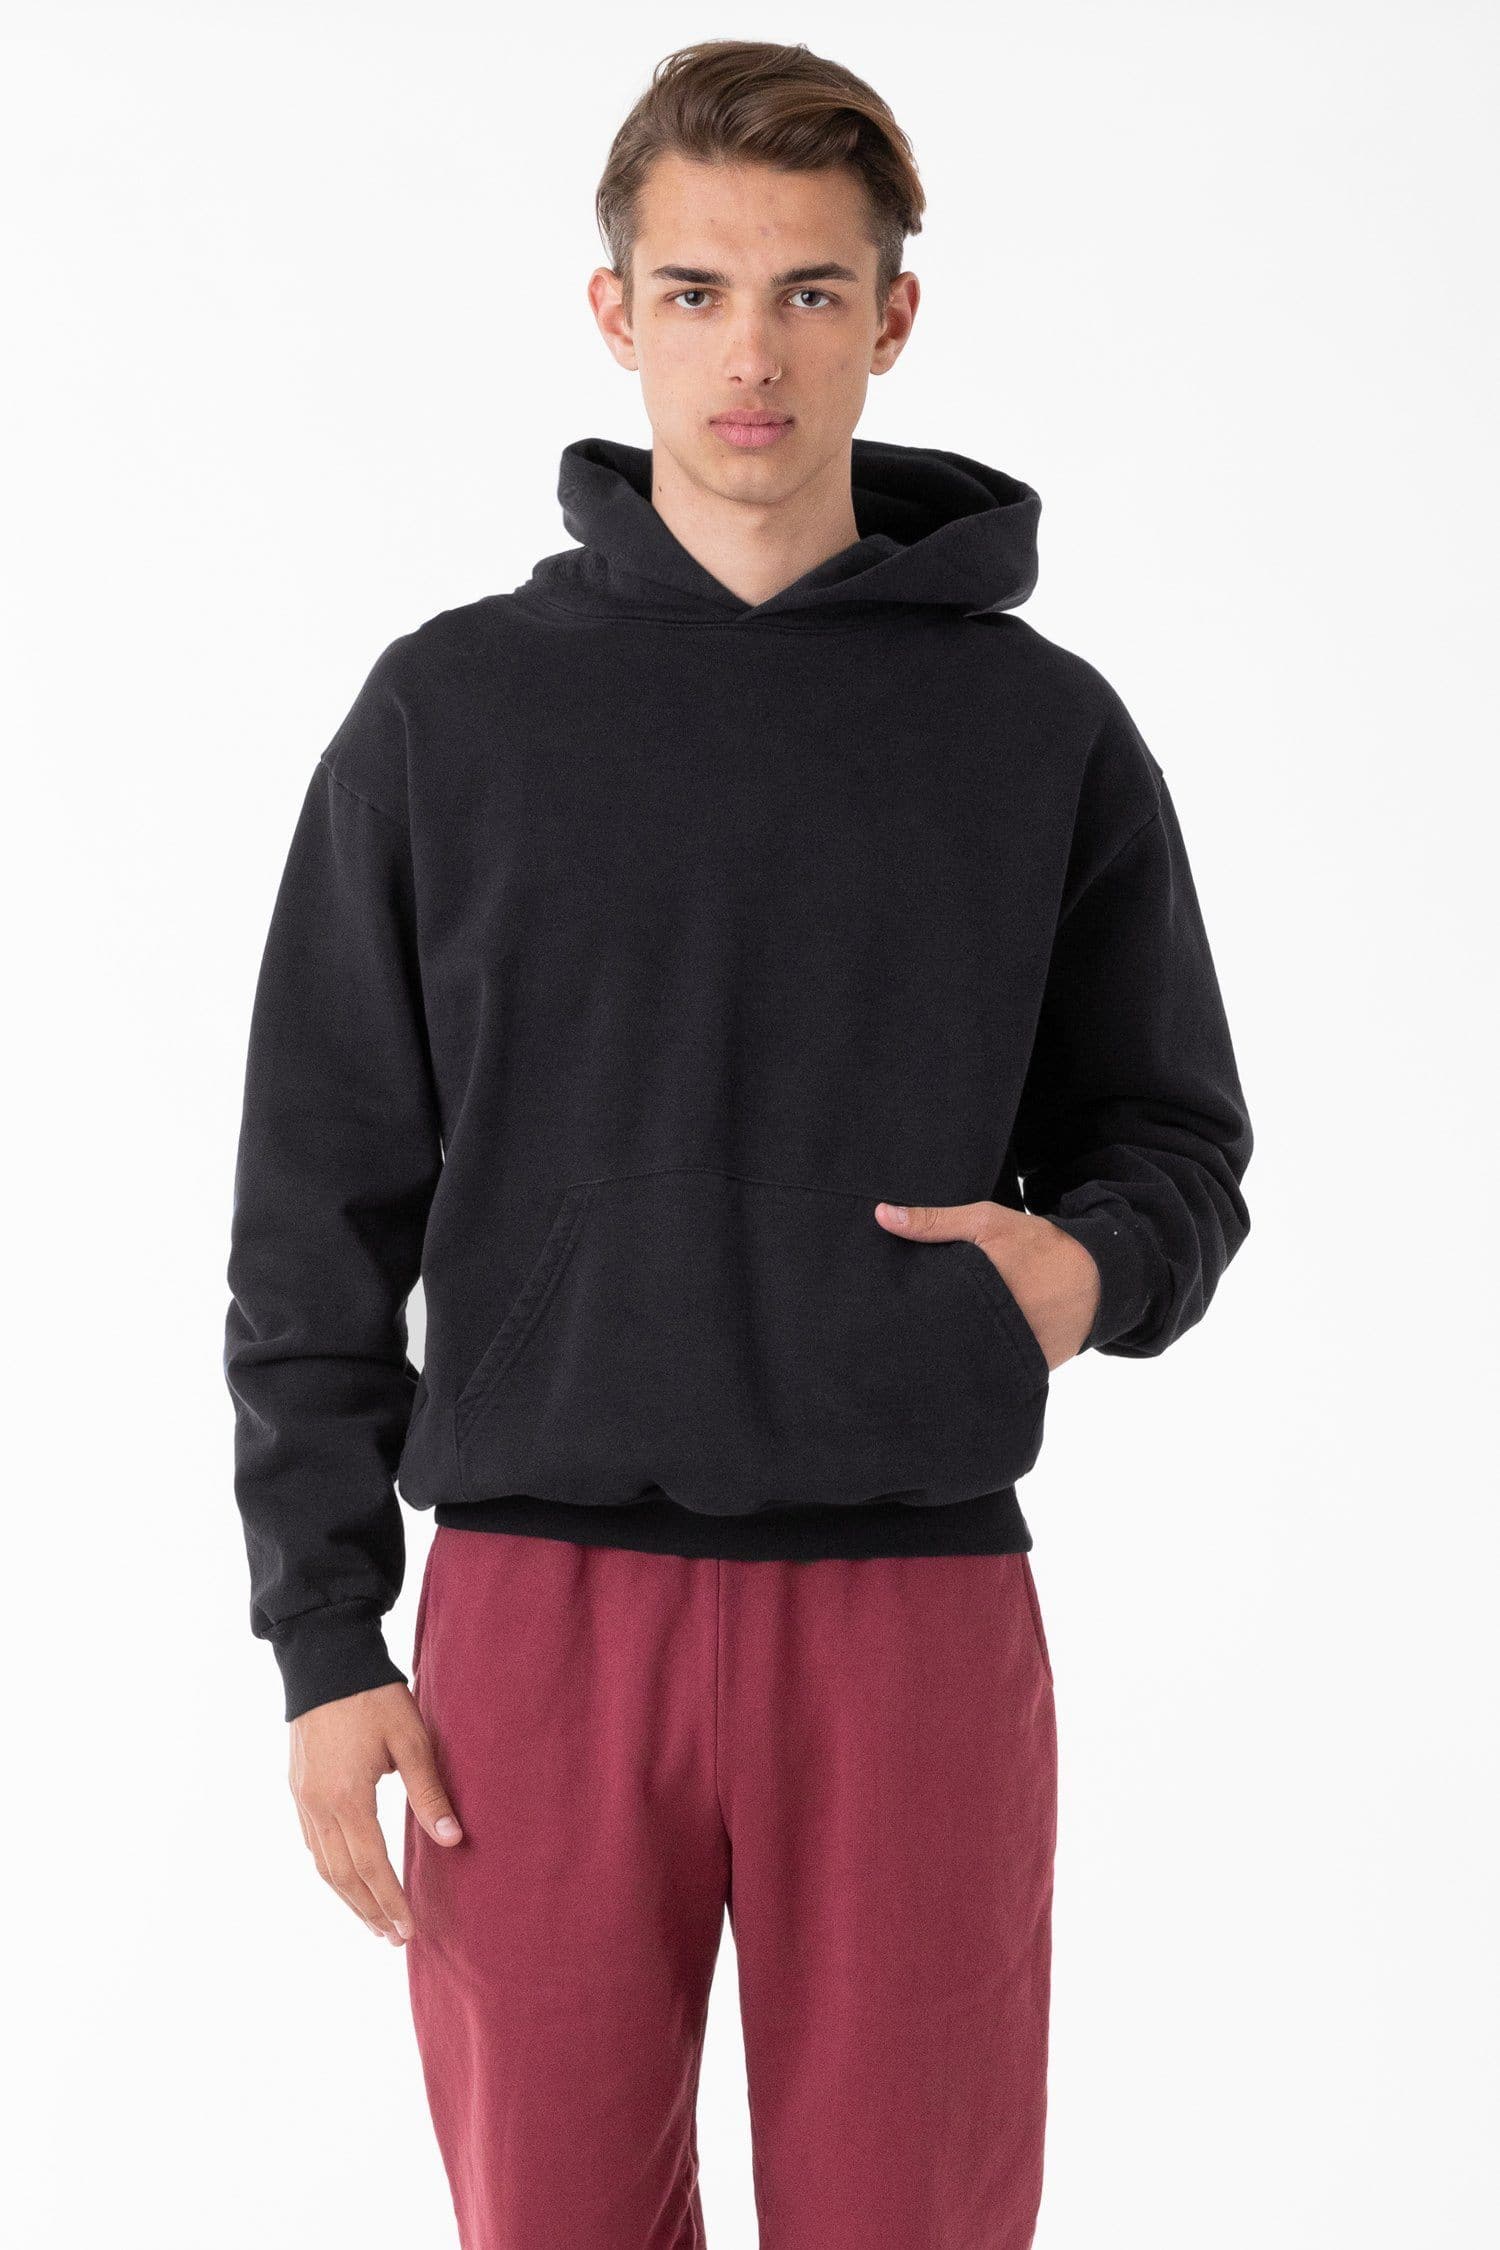 Heavy Stringless Wholesale x Oz. – LA Apparel Fleece Dye Hoodie Apparel | Mona 14 A2Z T-Shirt Garment